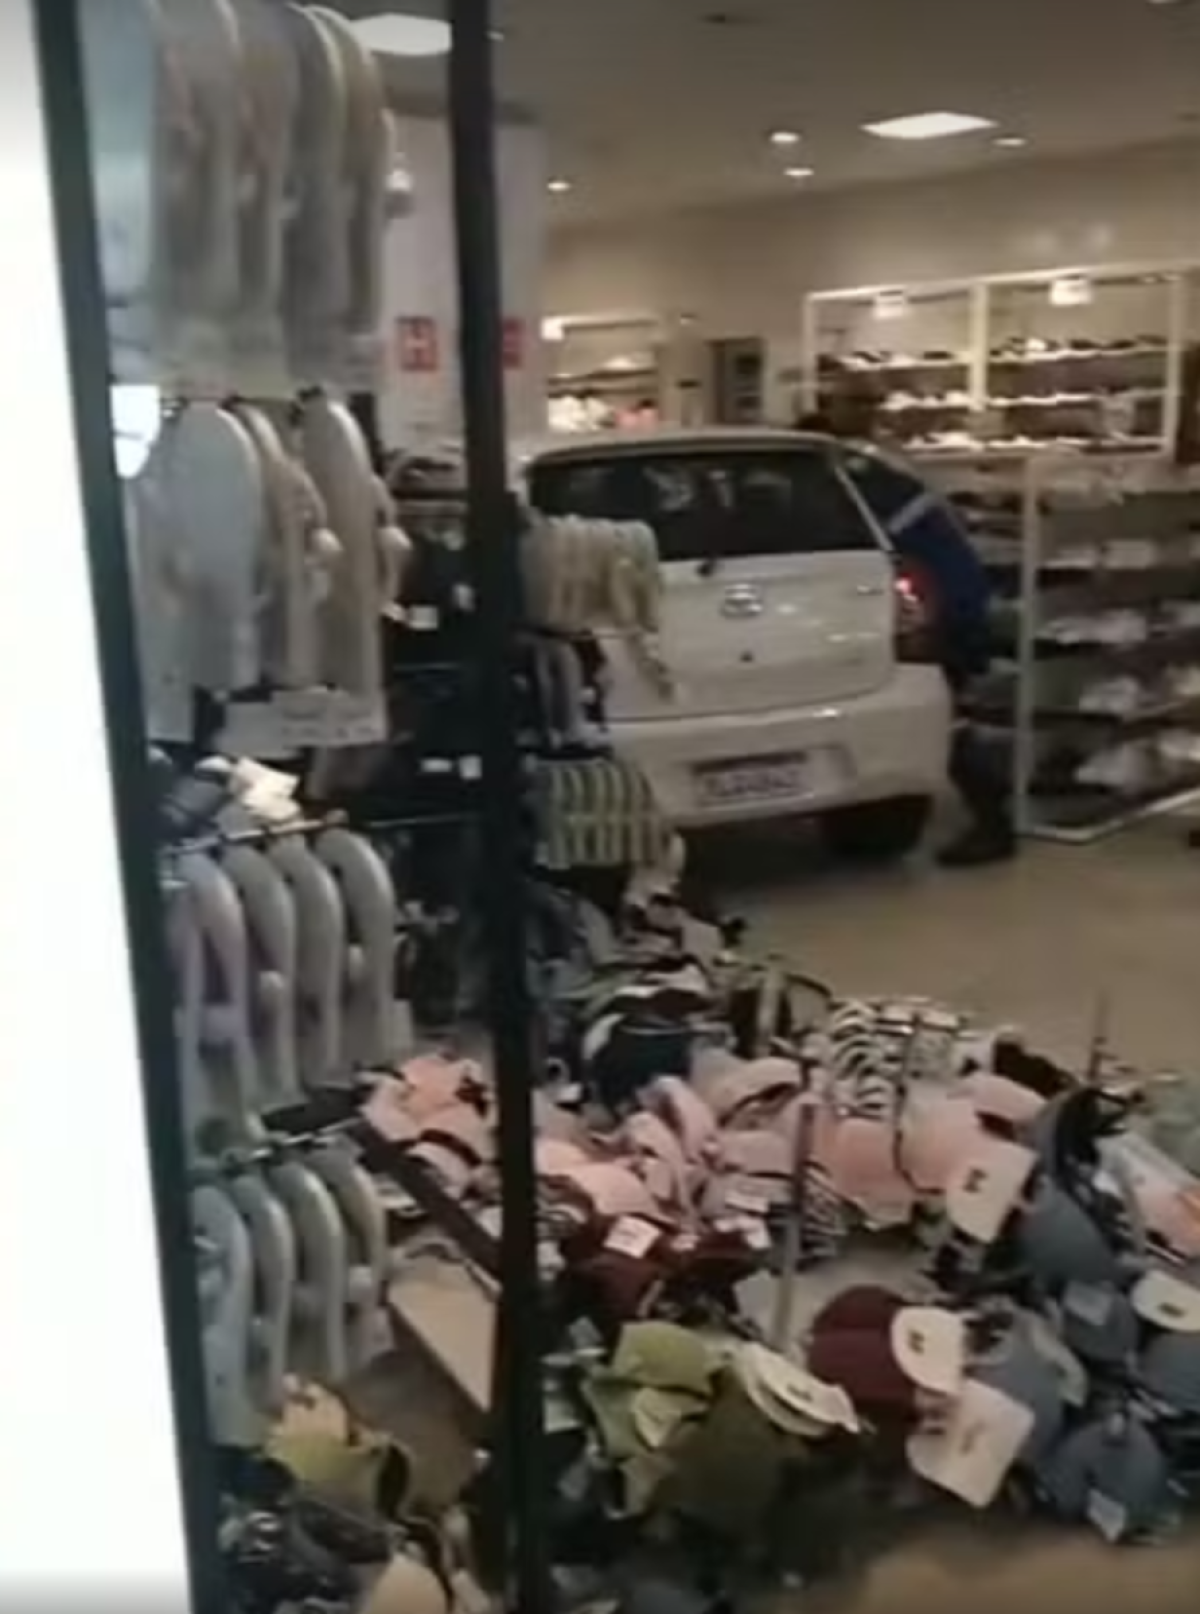 Toyota Etios branco dentro de uma loja de departamento batido em uma pilastra, rodeado por prateleiras e roupas jogadas ao chão e um homem tentando resgatar uma criança que está na parte de trás do carro